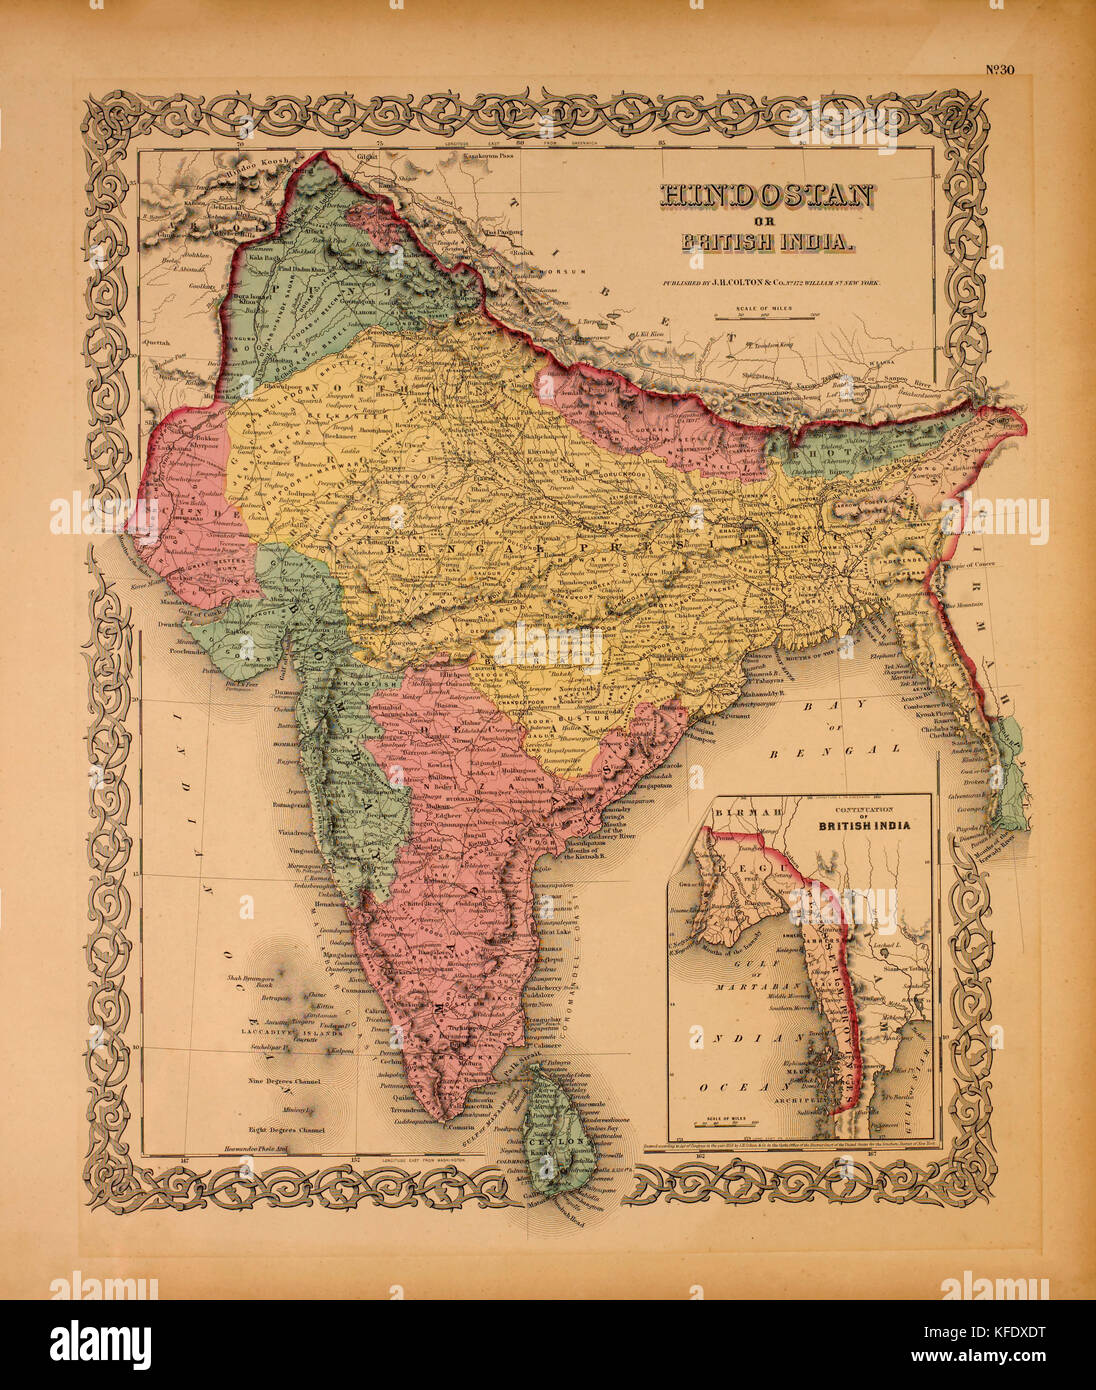 Carte de l'hindostan ou l'Inde britannique, 1855 Banque D'Images